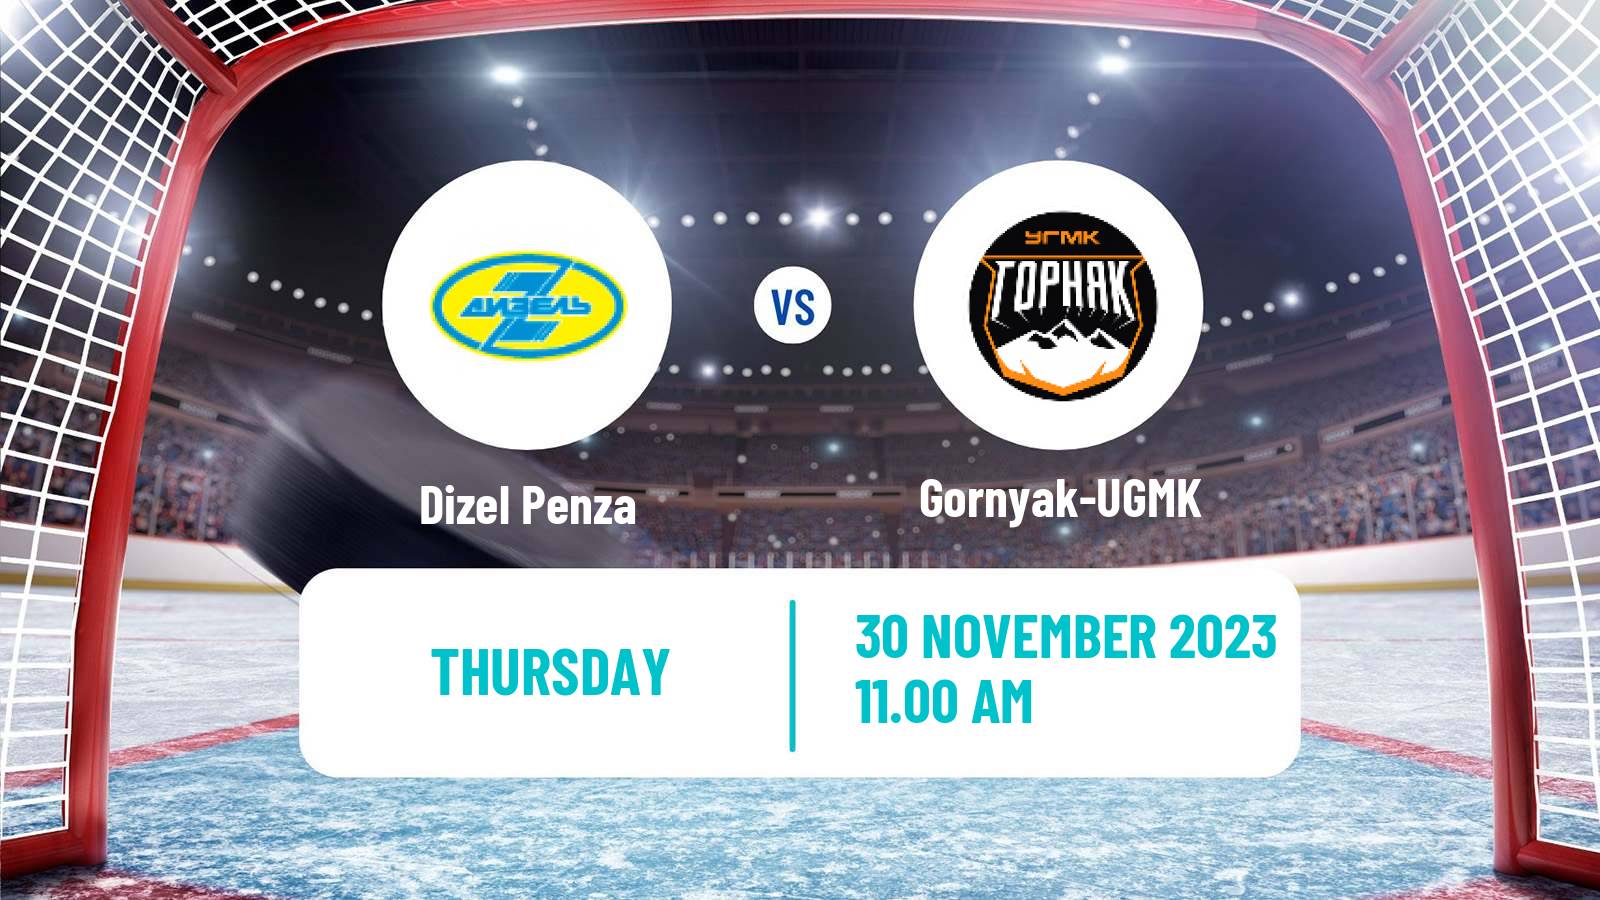 Hockey VHL Dizel Penza - Gornyak-UGMK